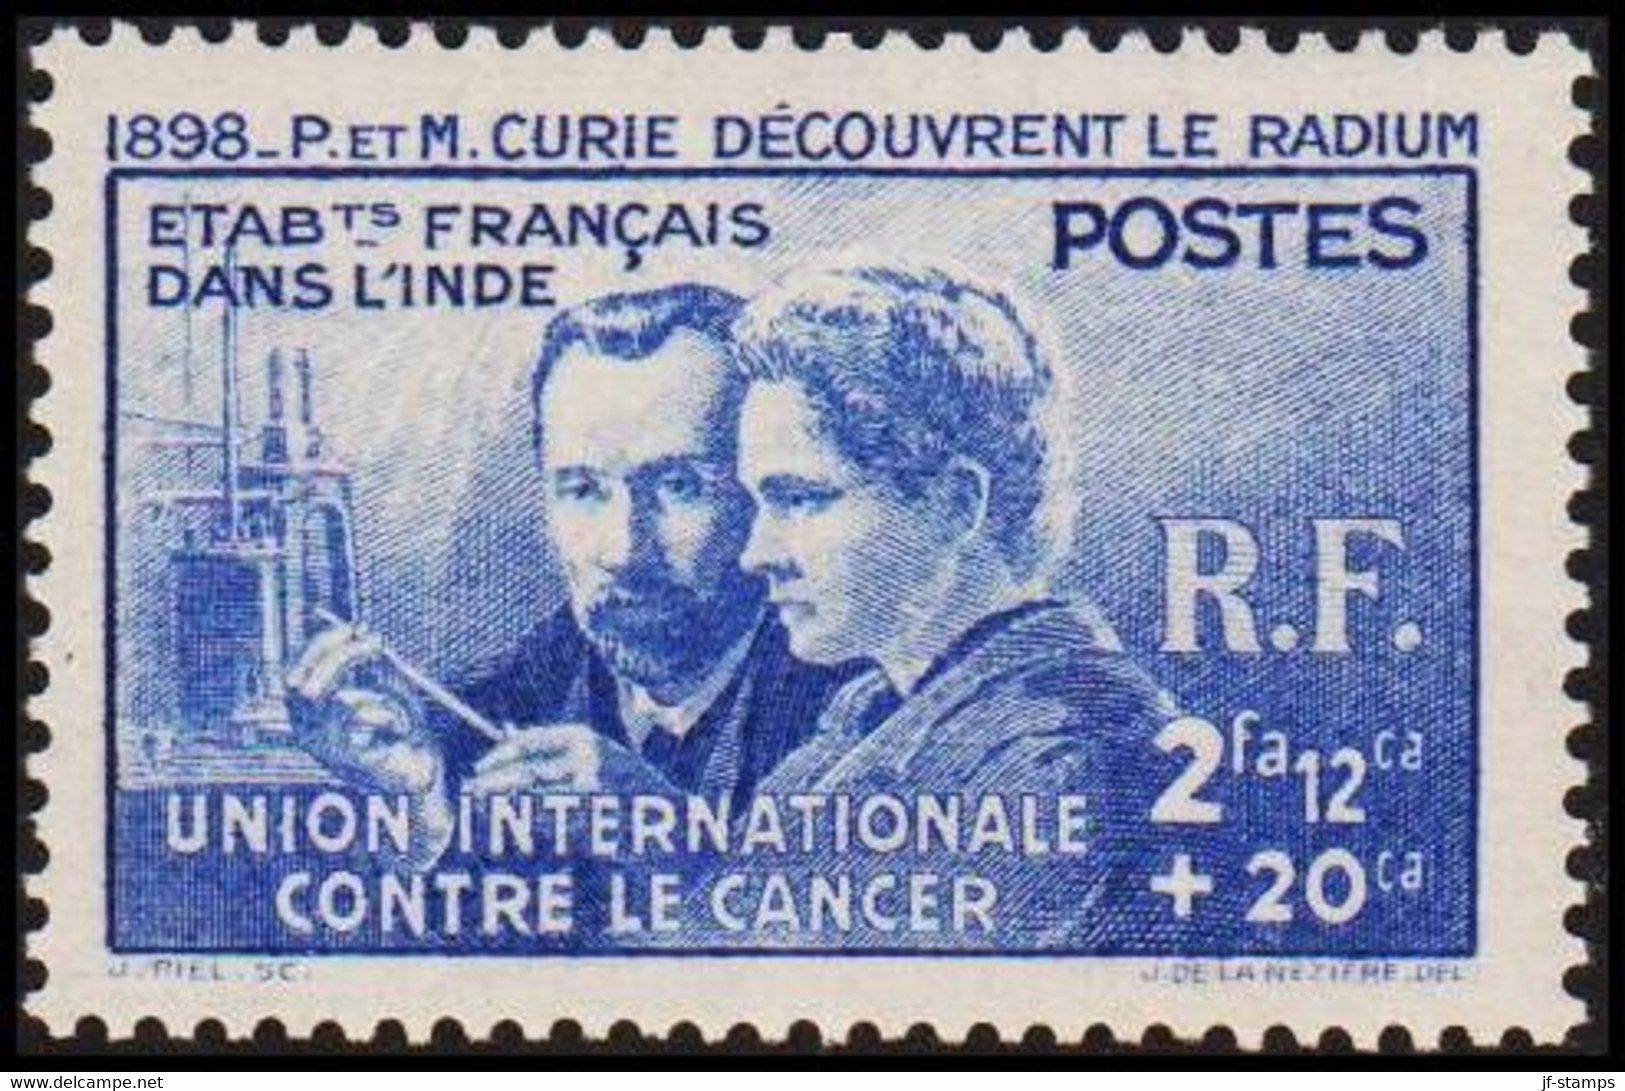 1938. ETABLISSEMENTS DE L'INDE. P & M. CURIE DECOUVRENT LE RADIUM. UNION INTERNATIONALE CONTR... (Michel 115) - JF519066 - Storia Postale